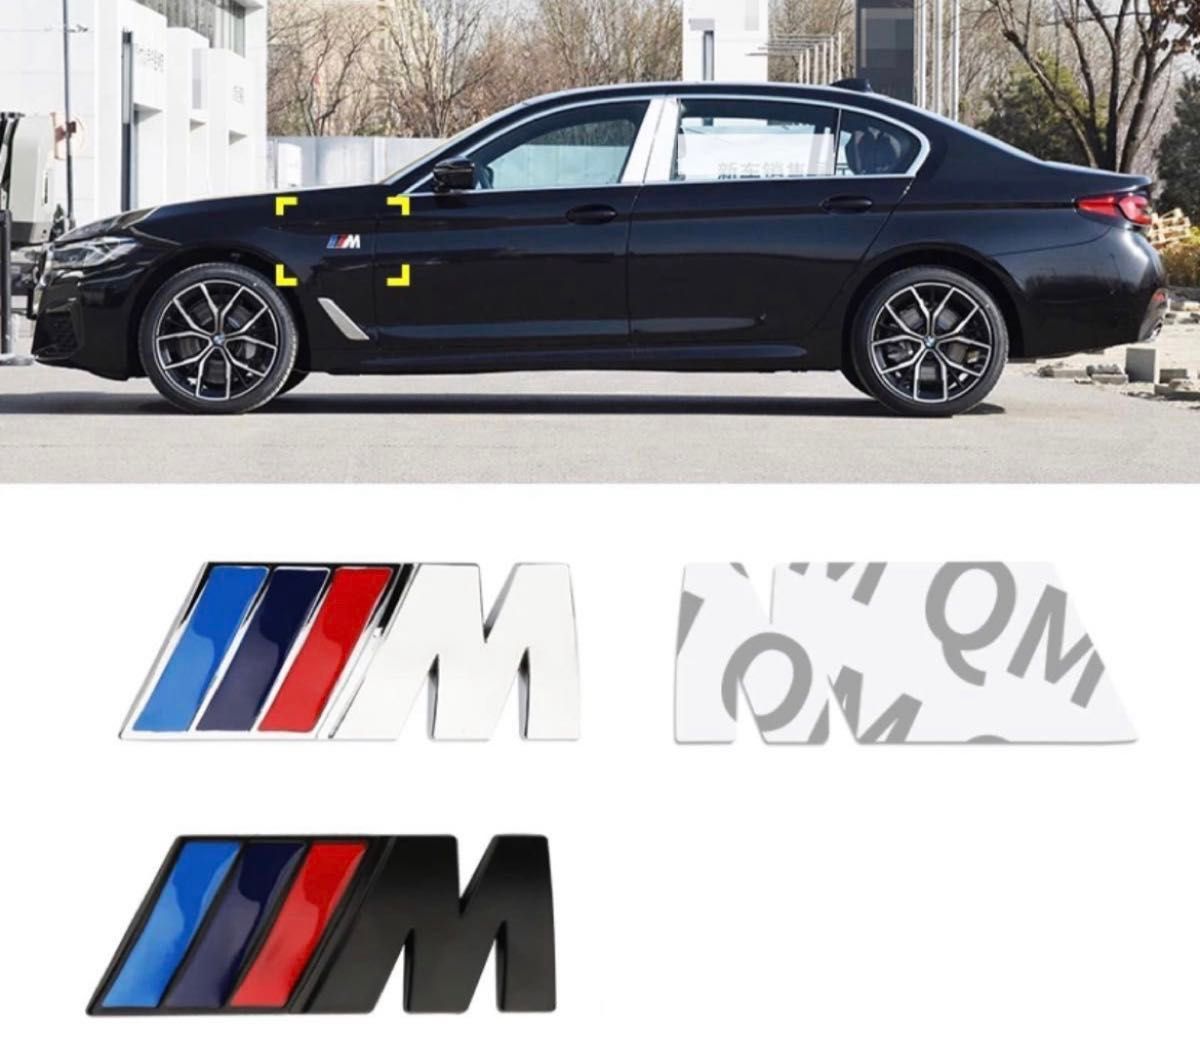 BMW Mスポーツ リア　フェンダーエンブレム シルバー　リアトランク 4.5cm 立体エンブレム M-Sports ステッカー